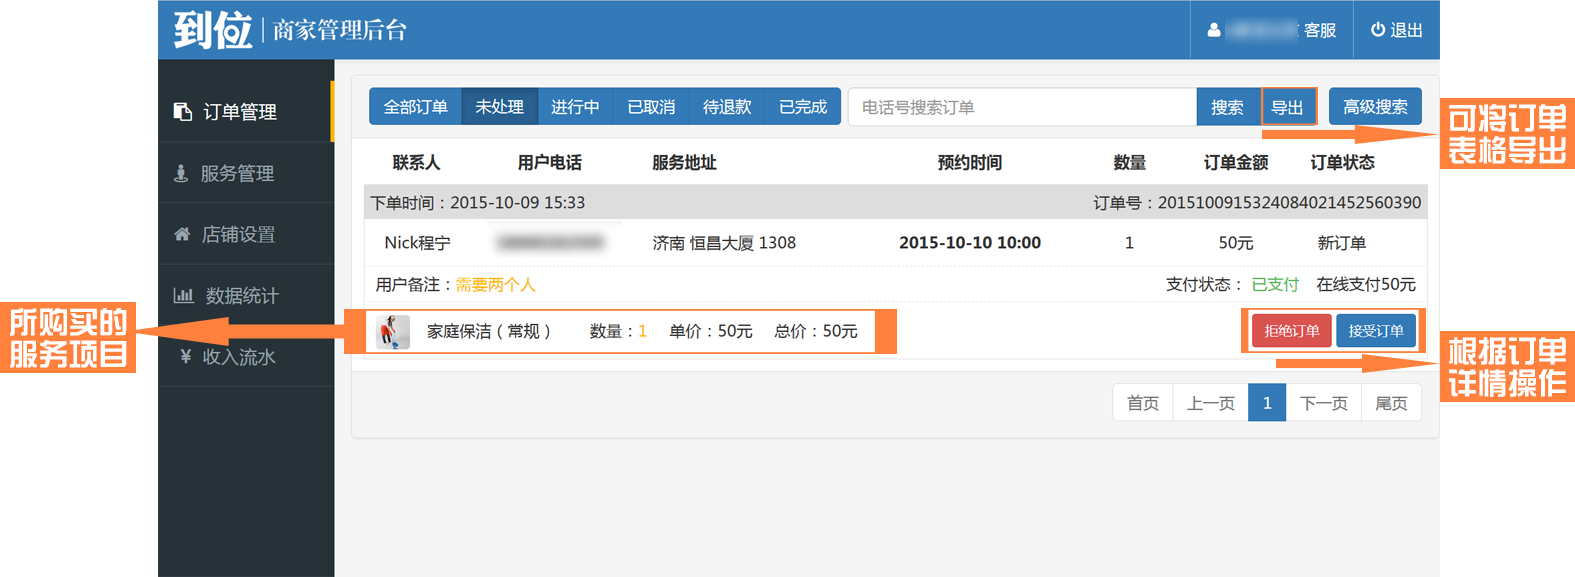 12306中国铁路客户服务中心微博_客户体验中心服务流程_中国铁路客户服务中心核验